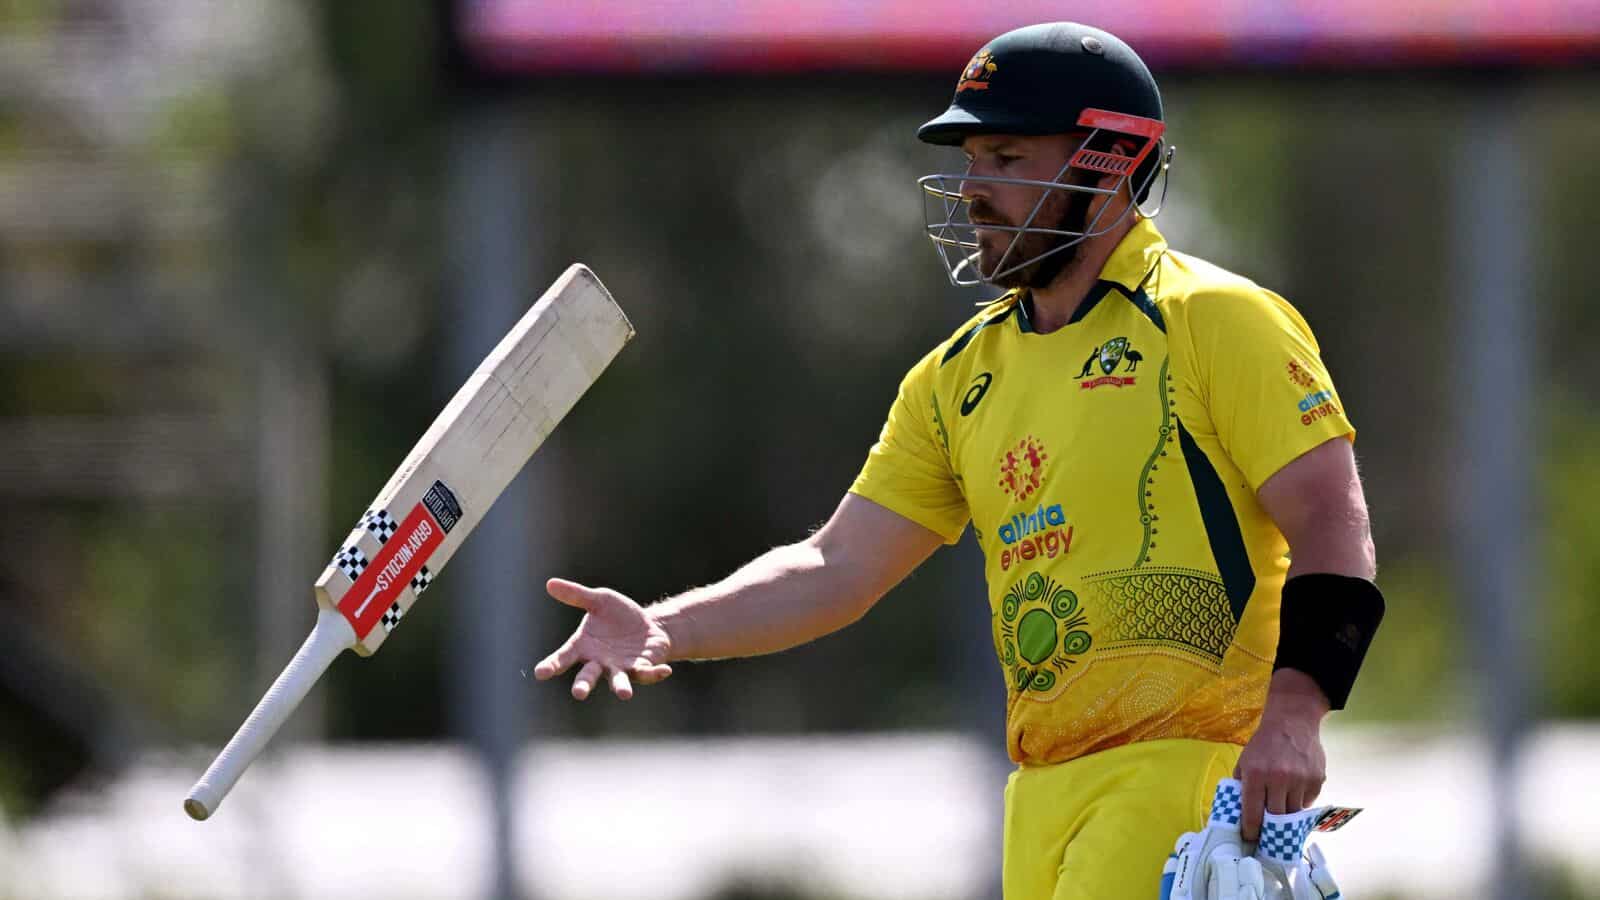 ऑस्ट्रेलियाई कप्तान एरॉन फिंच (Aaron Finch) कल खेलेंगे आखिरी ODI, एकदिवसीय क्रिकेट से लिया सन्यास